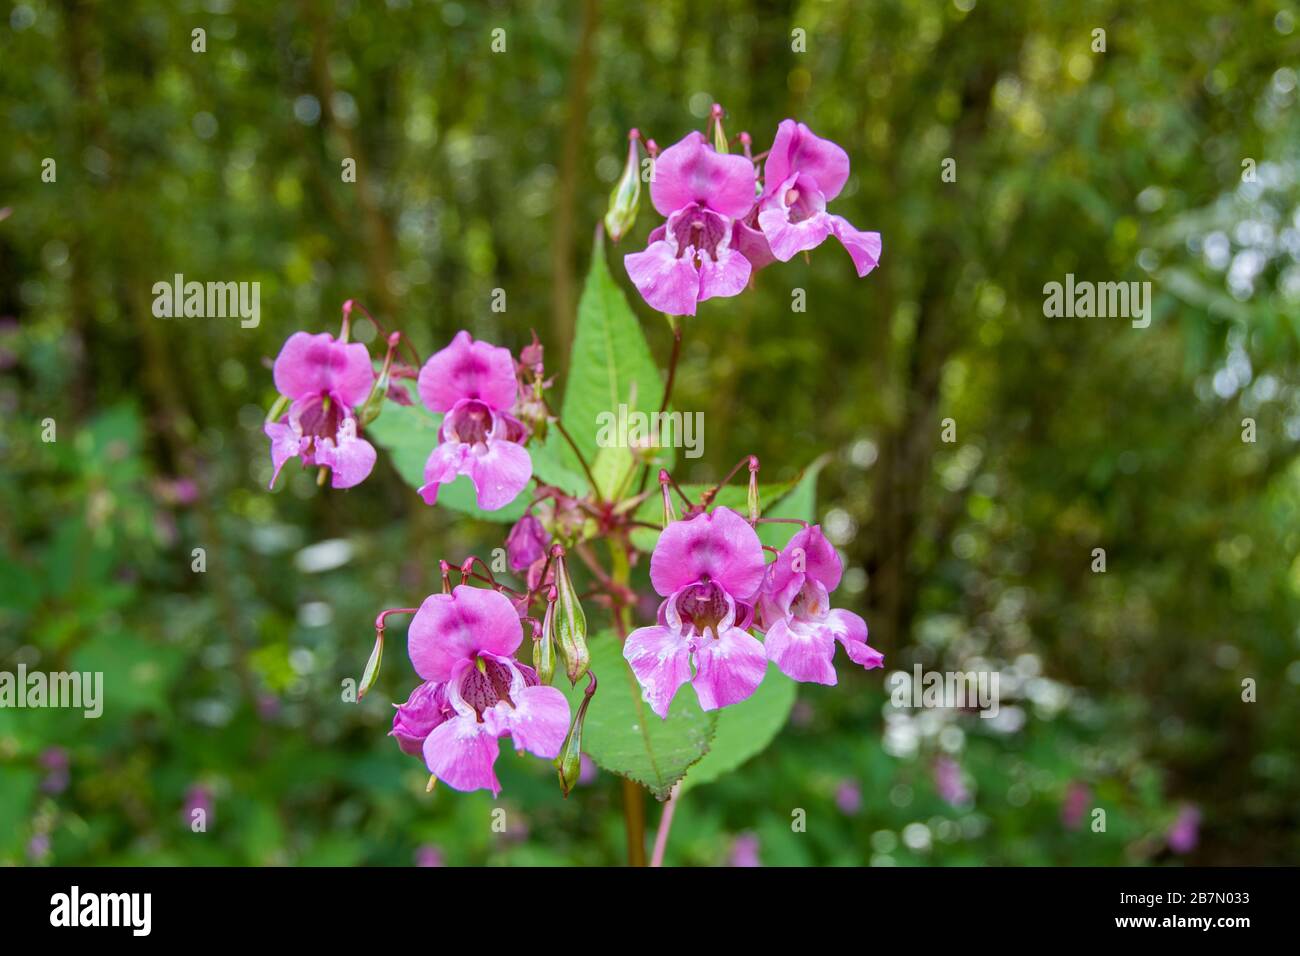 Rosafarbene Blumen des Himalaya-Balsam, eine schöne, aber invasive, nicht heimische Art im englischen Wald Stockfoto